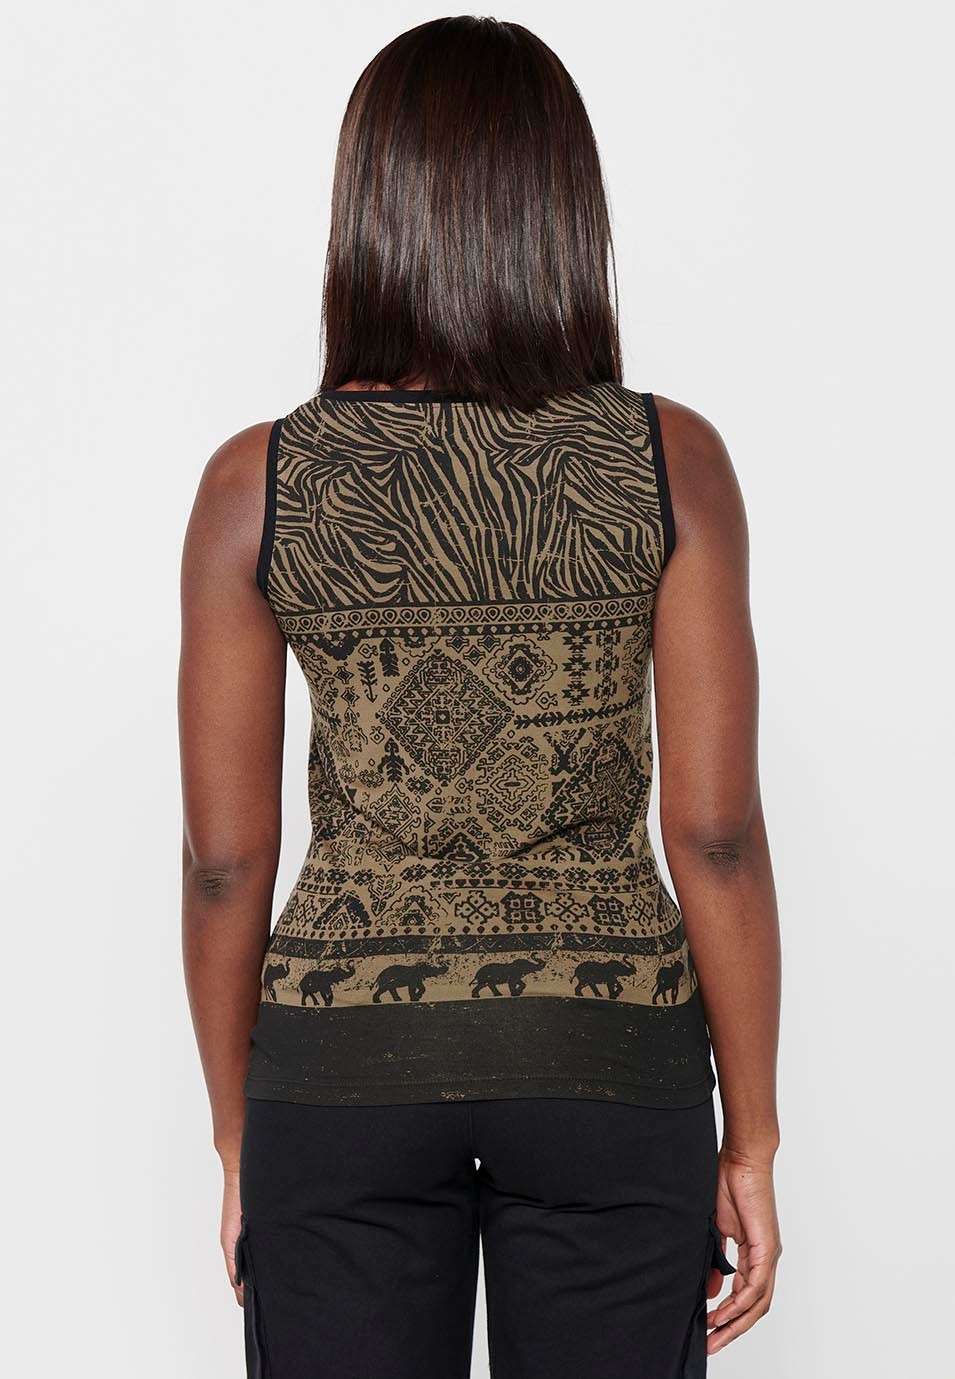 Ärmelloses Damen-T-Shirt mit Rundhalsausschnitt in Khaki-Farbe mit Print vorne